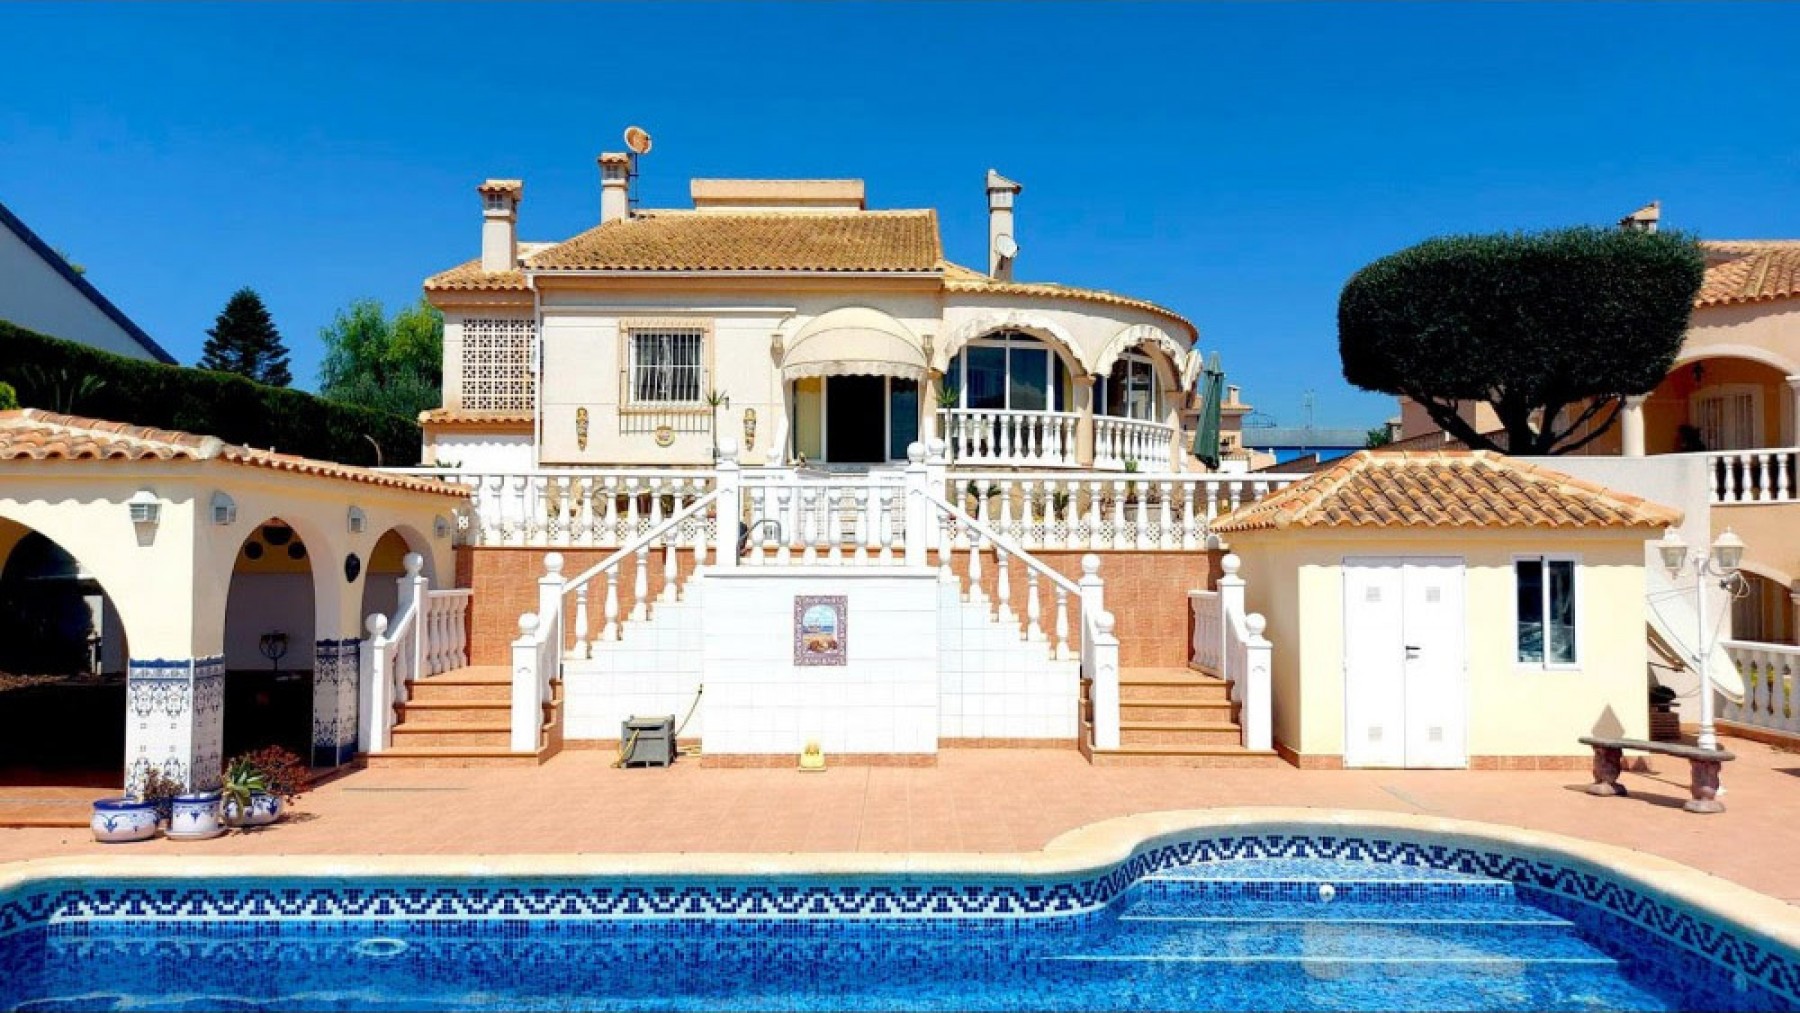 4-bedroom, 3-bathroom luxury villa in La Marina with double garage